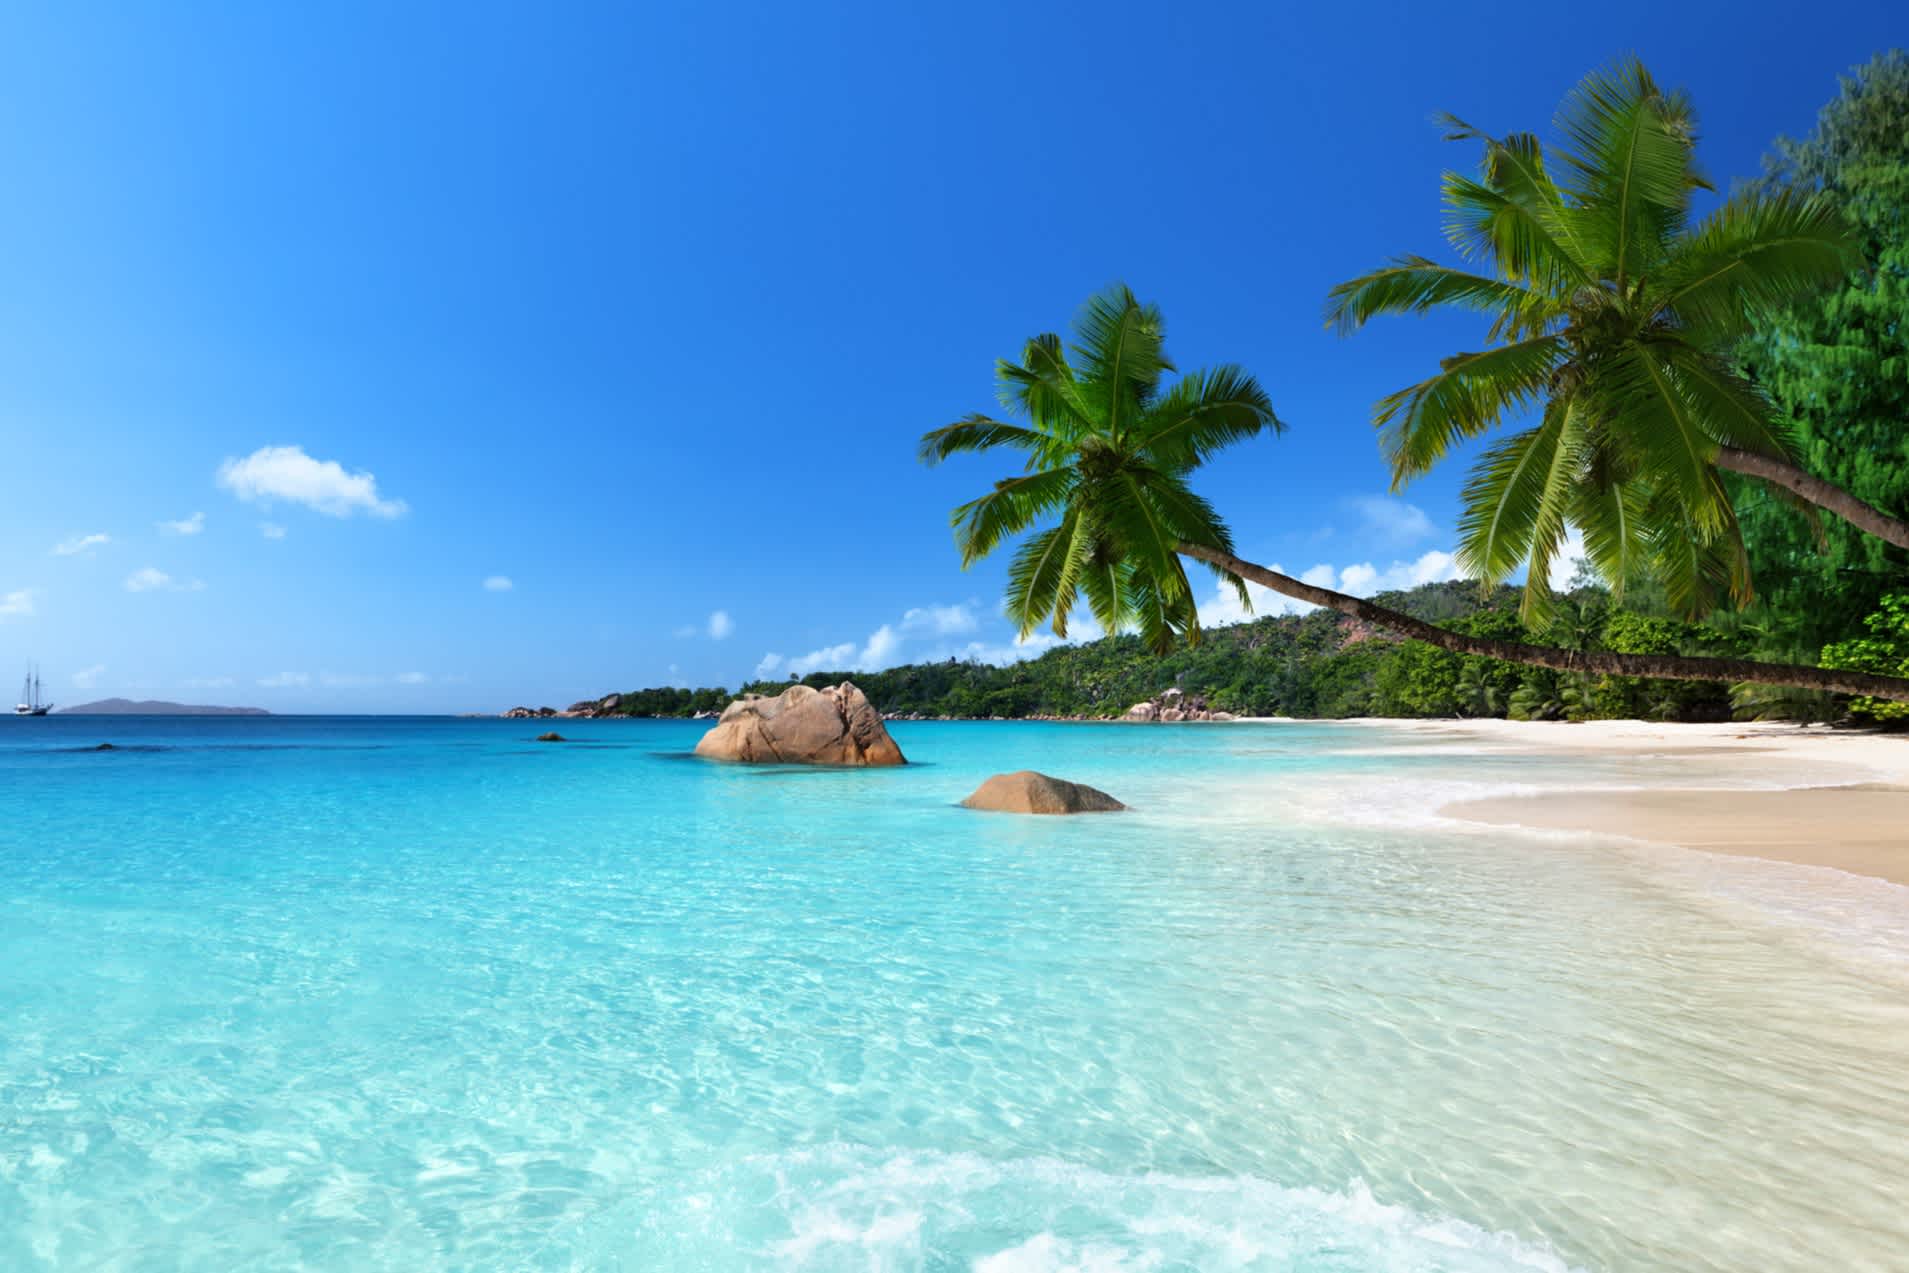 Partez en vacances sur les plages paradisiaques des Seychelles